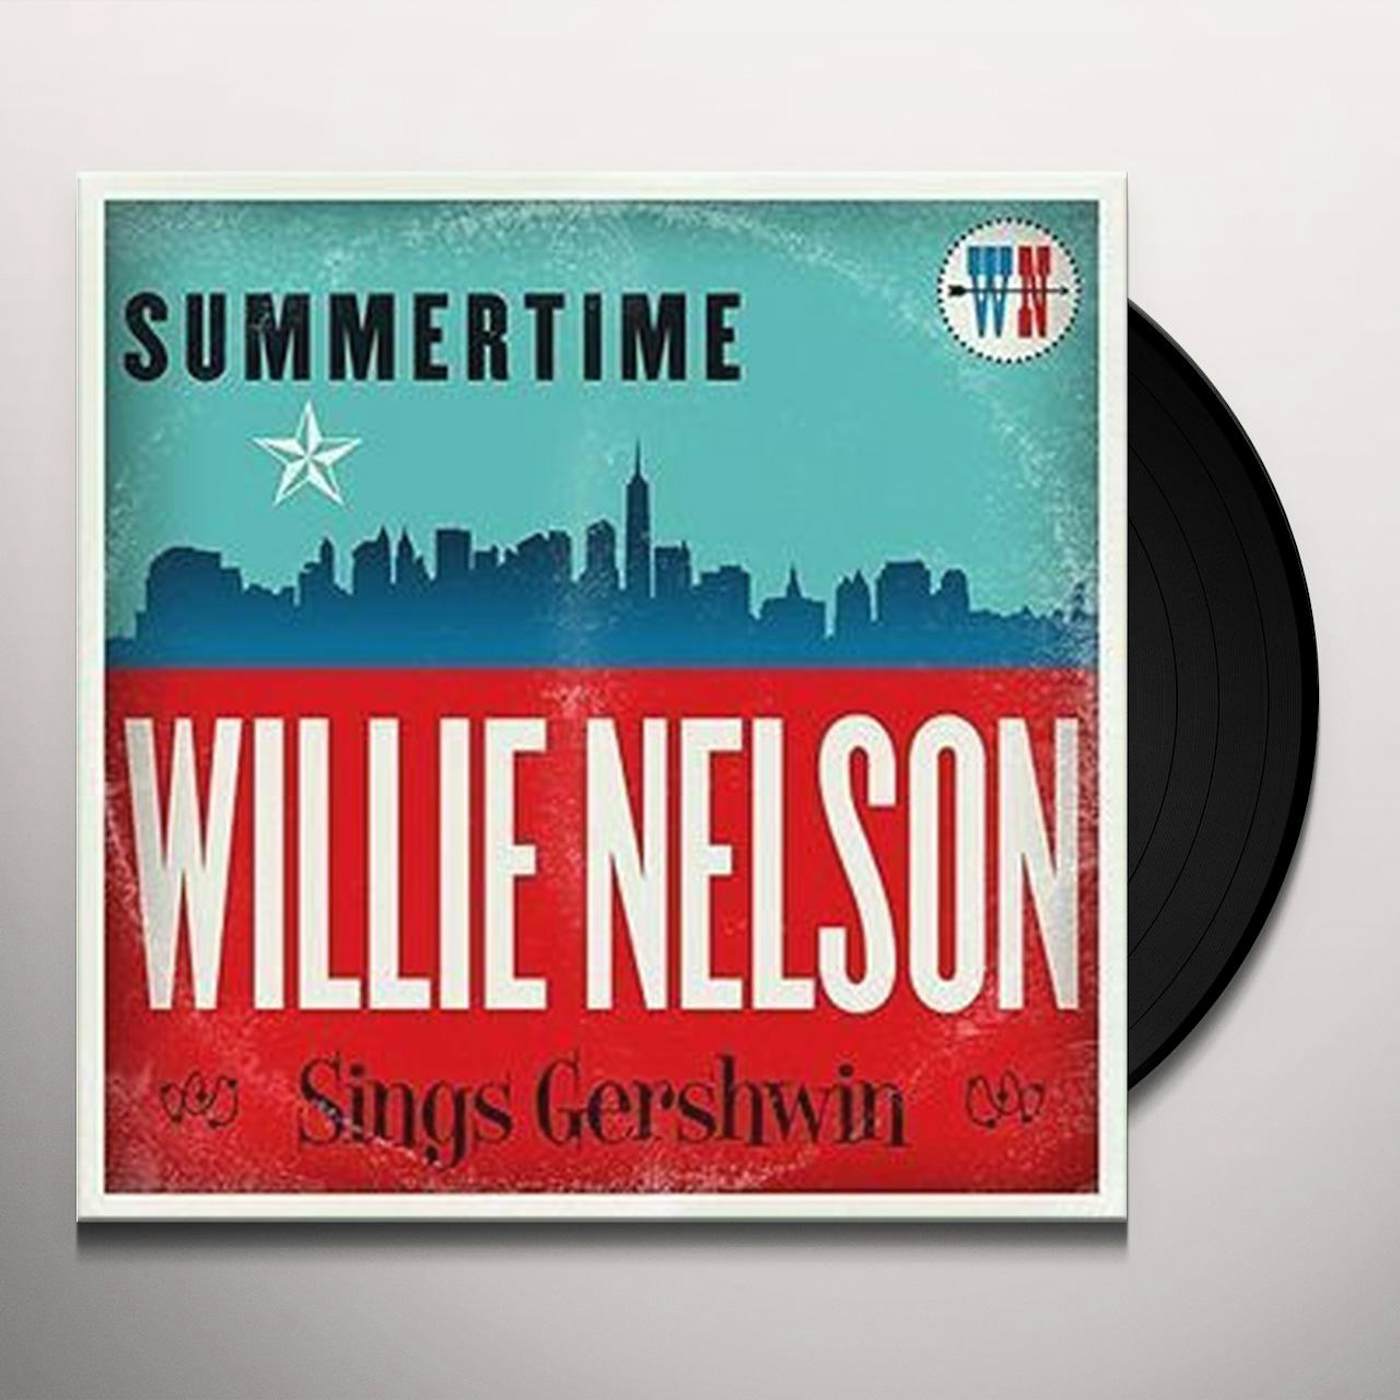 Summertime: Willie Nelson Sings Gershwin Vinyl Record